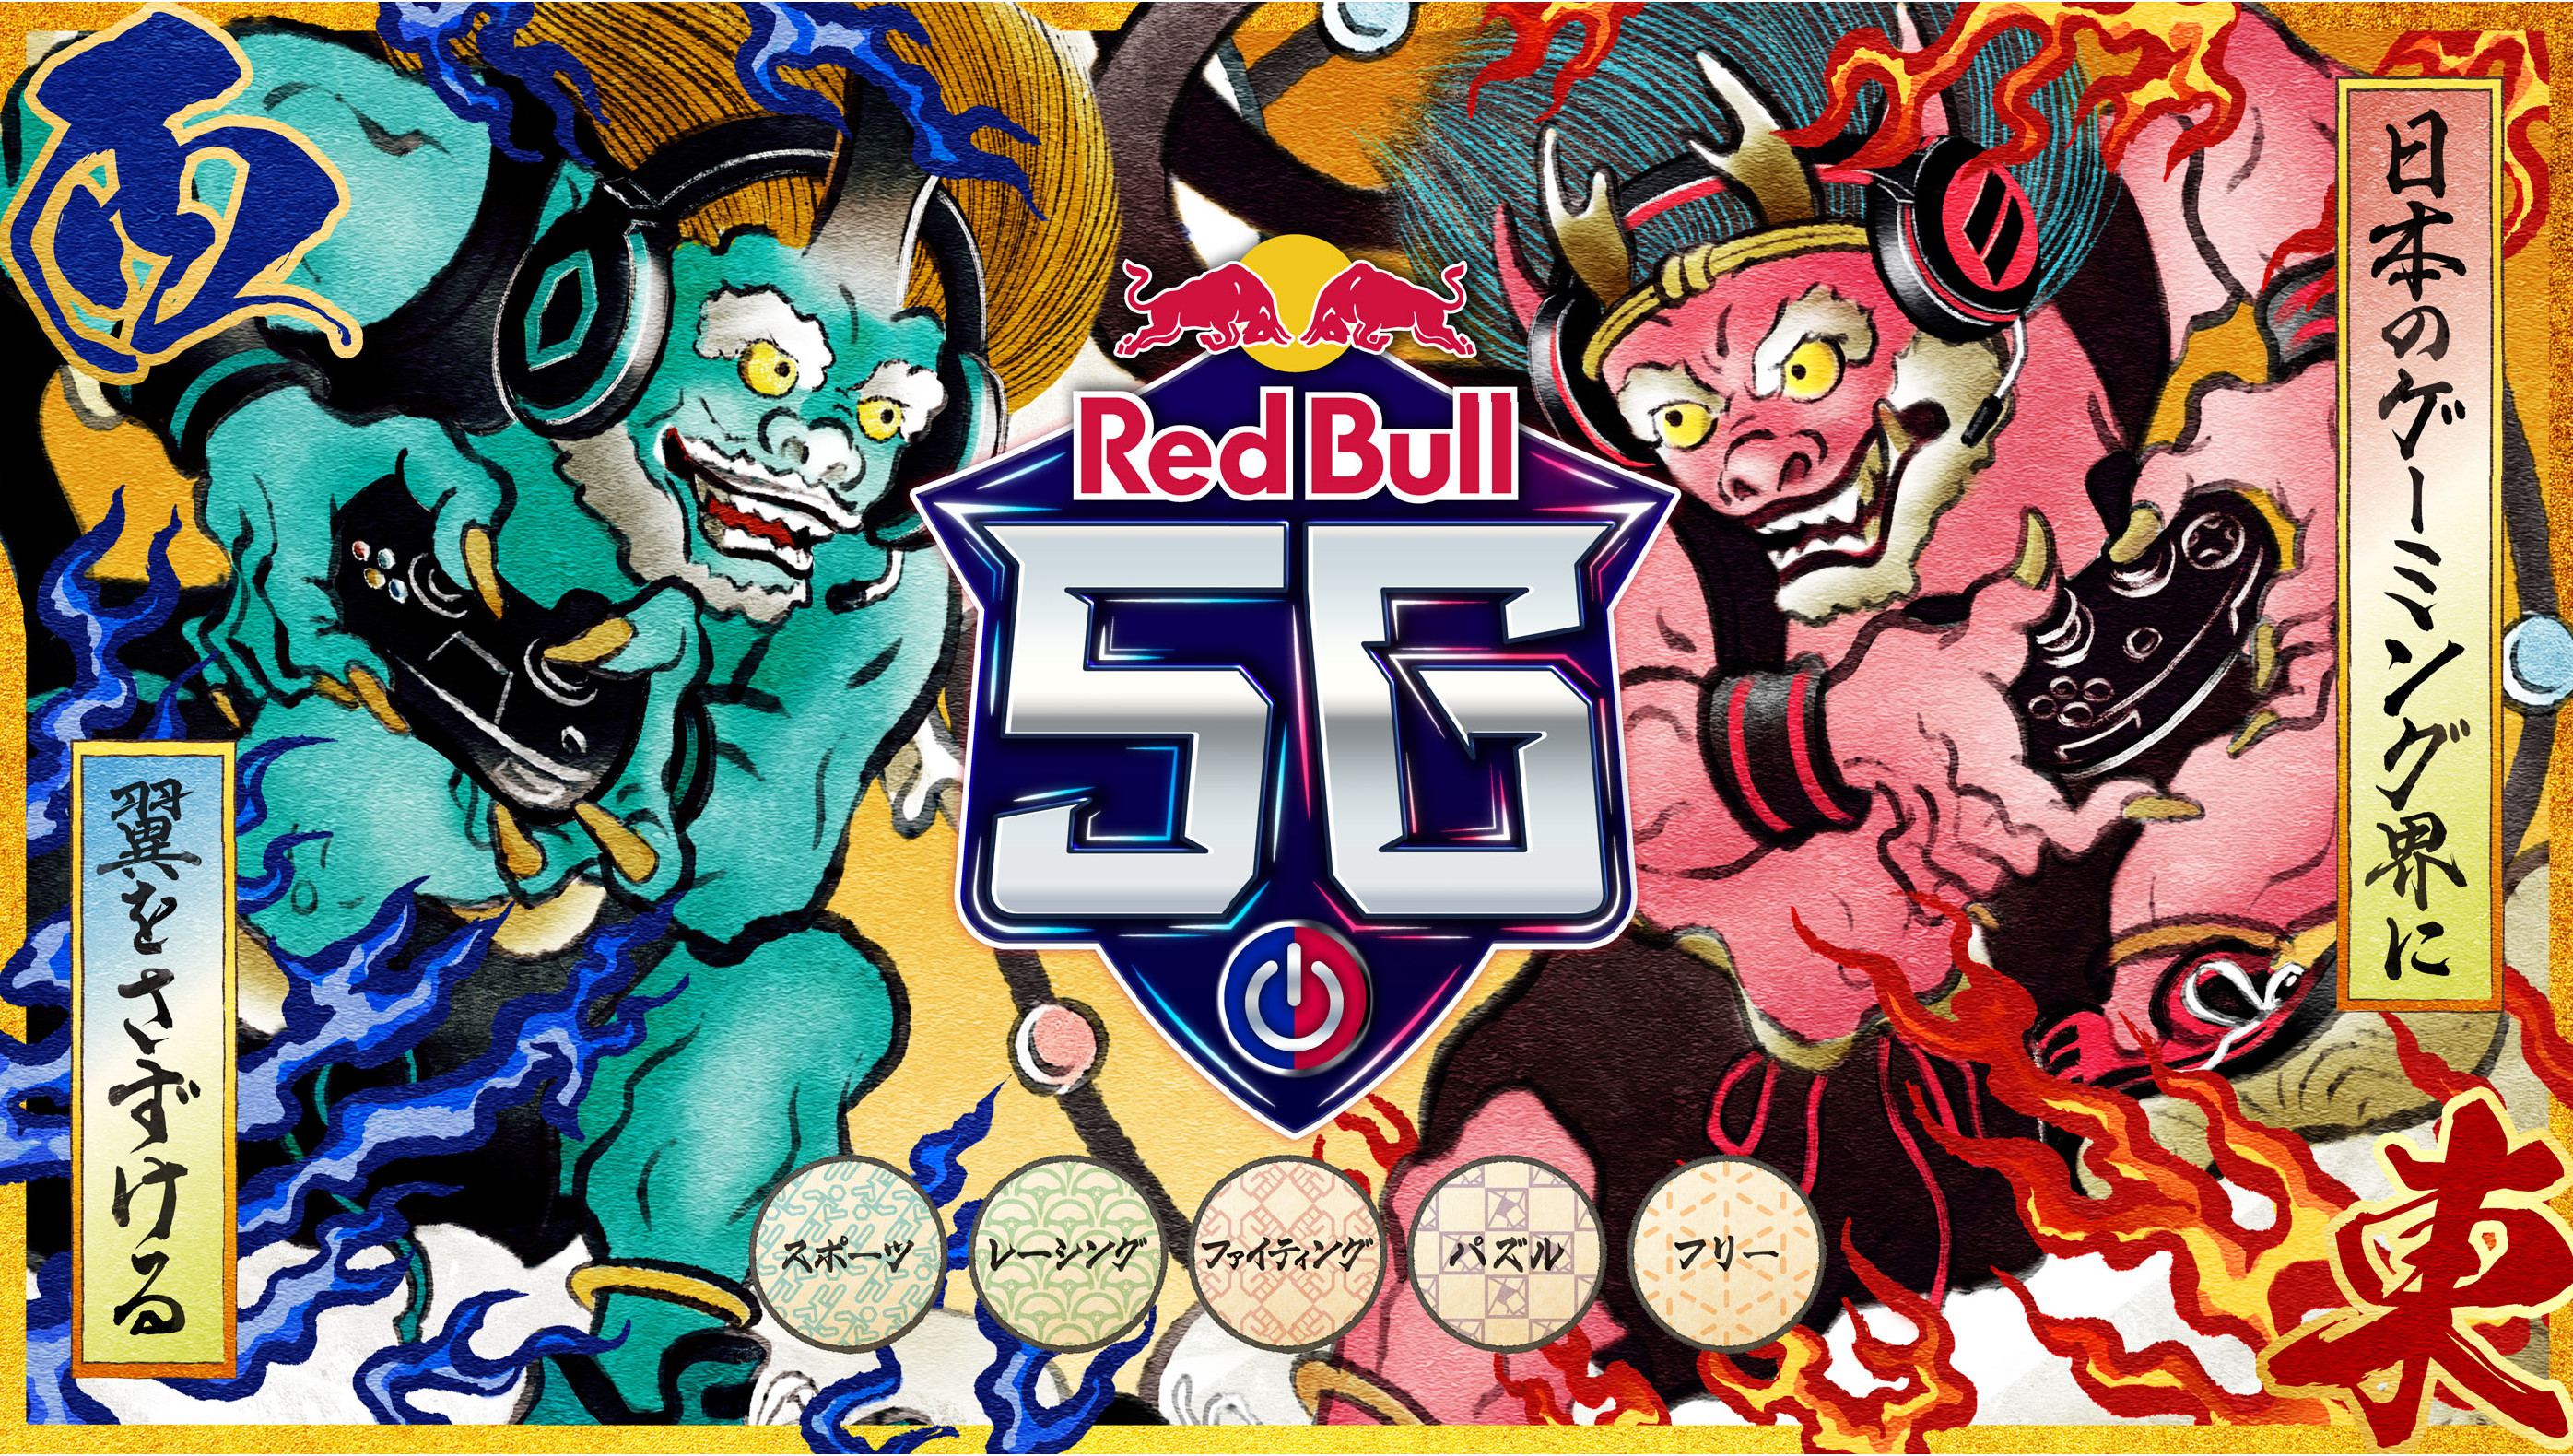 【大会情報】Red Bull 5G 2021 FINALS【2021年11月27日】